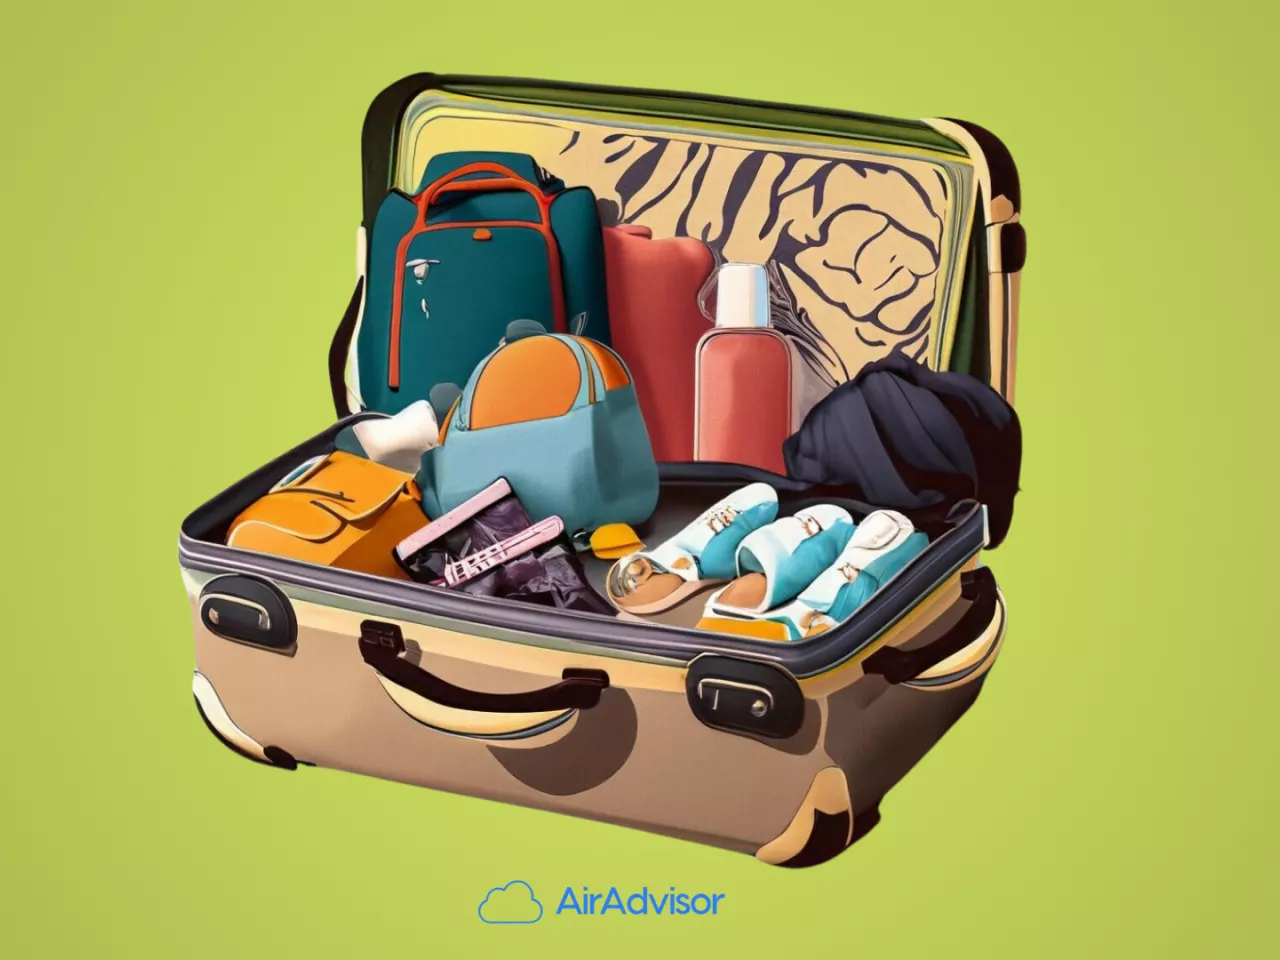 Travel Toiletry Bag Essentials for Your Next Trip - Joanna E